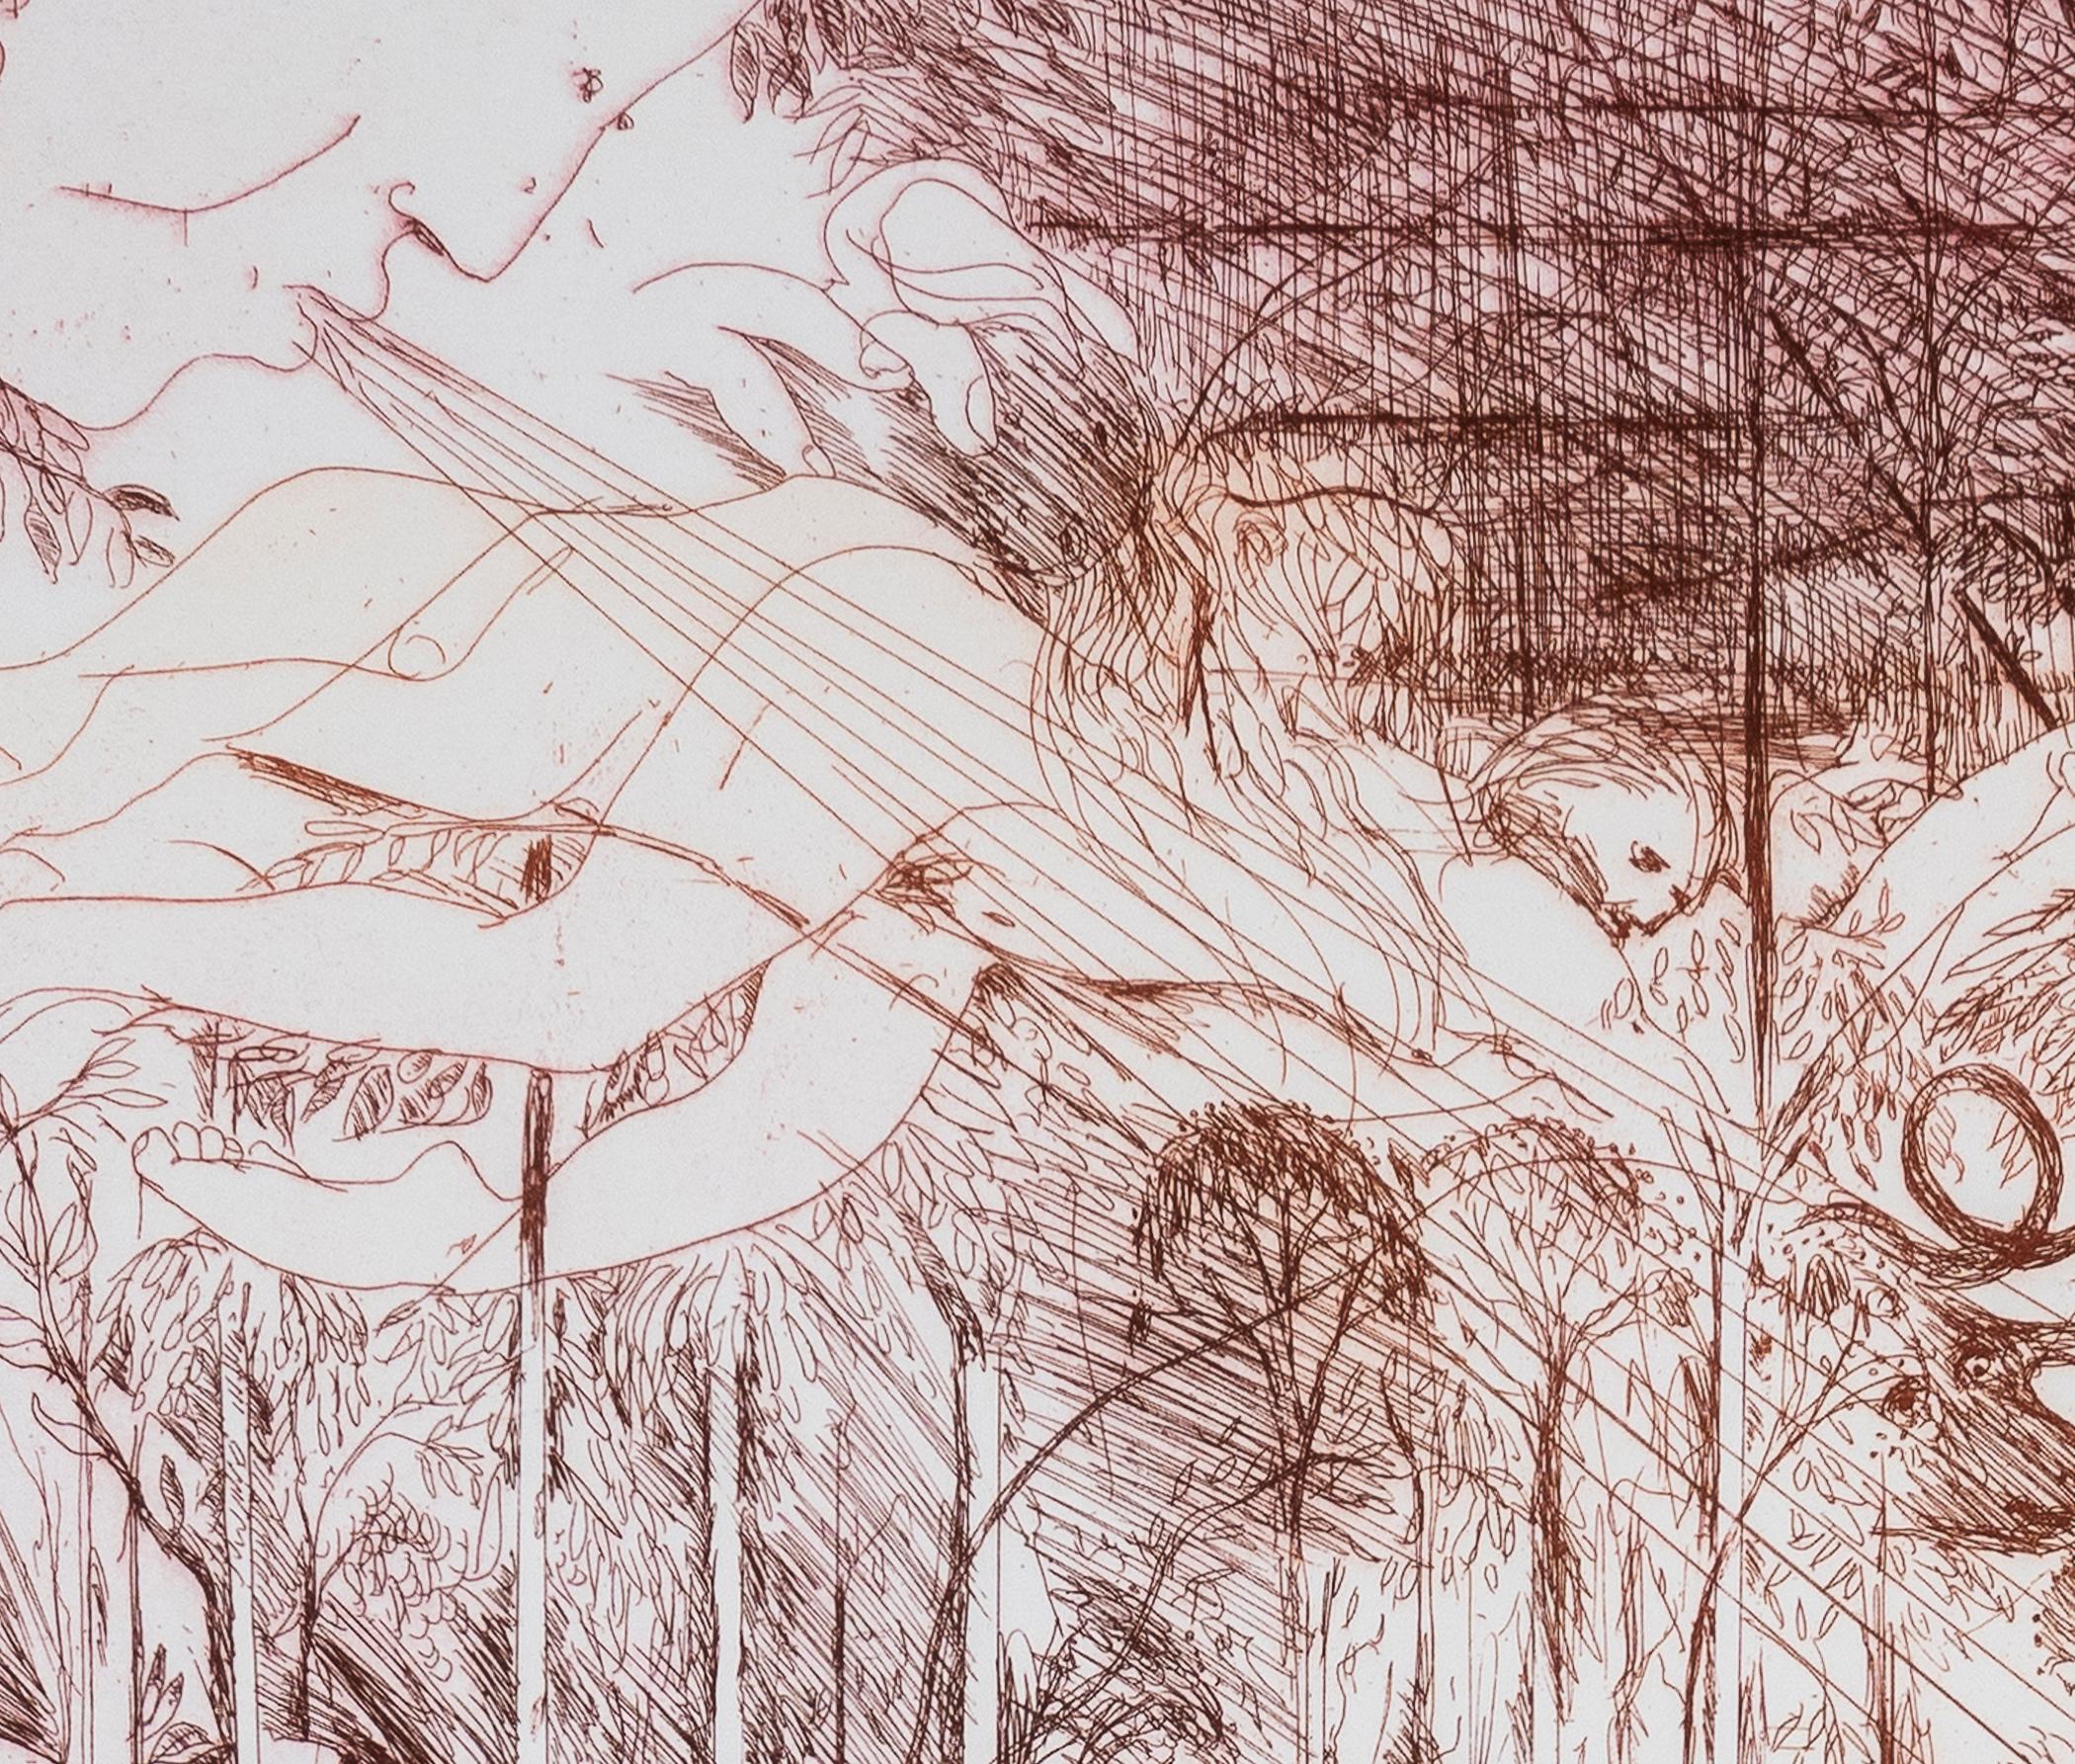 Paysage avec Adams et Eve avec un ange

Par Arthur Boyd

Médium - Gravure en couleur sur vélin.
Signé - Oui
Édition - Épreuve d'artiste
Taille - 640mm x 820mm
Date - 1986
Condition - 8
La couleur de l'impression peut ne pas être exacte lorsqu'elle